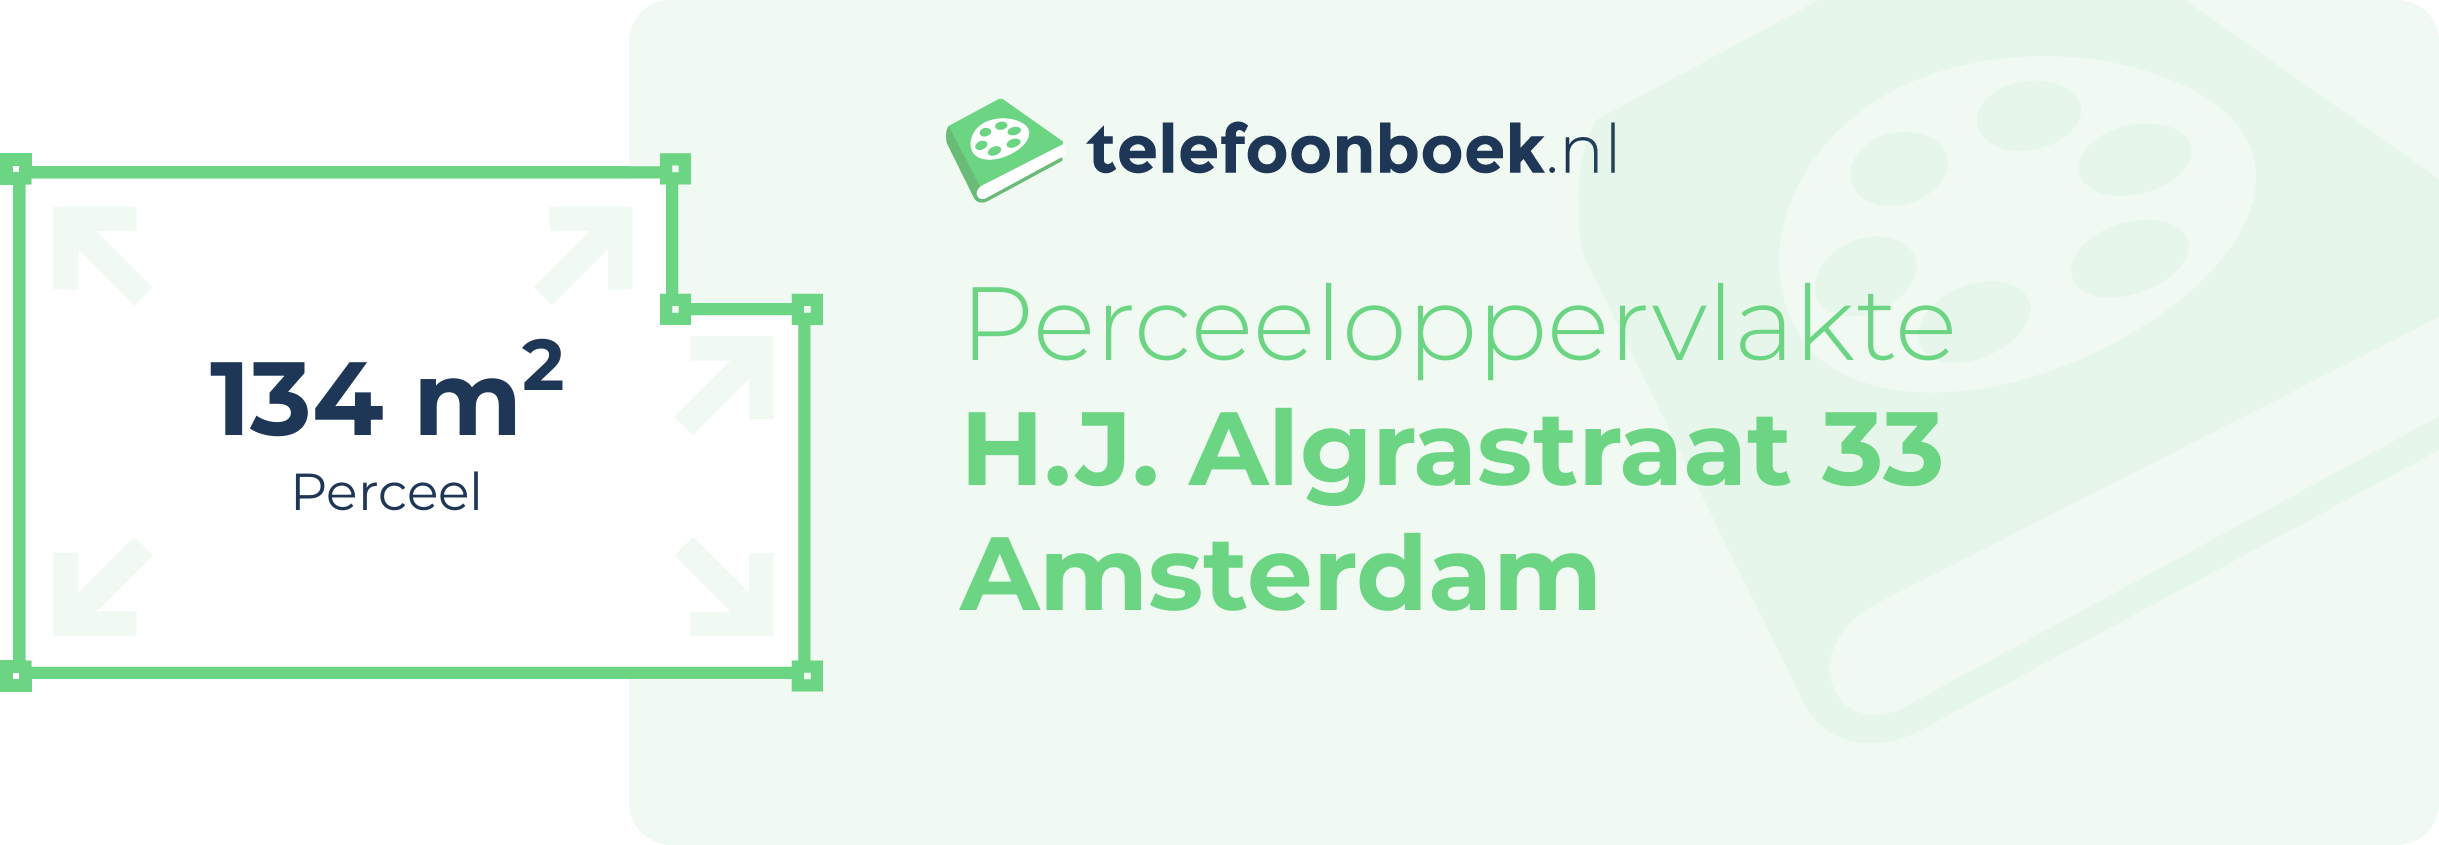 Perceeloppervlakte H.J. Algrastraat 33 Amsterdam